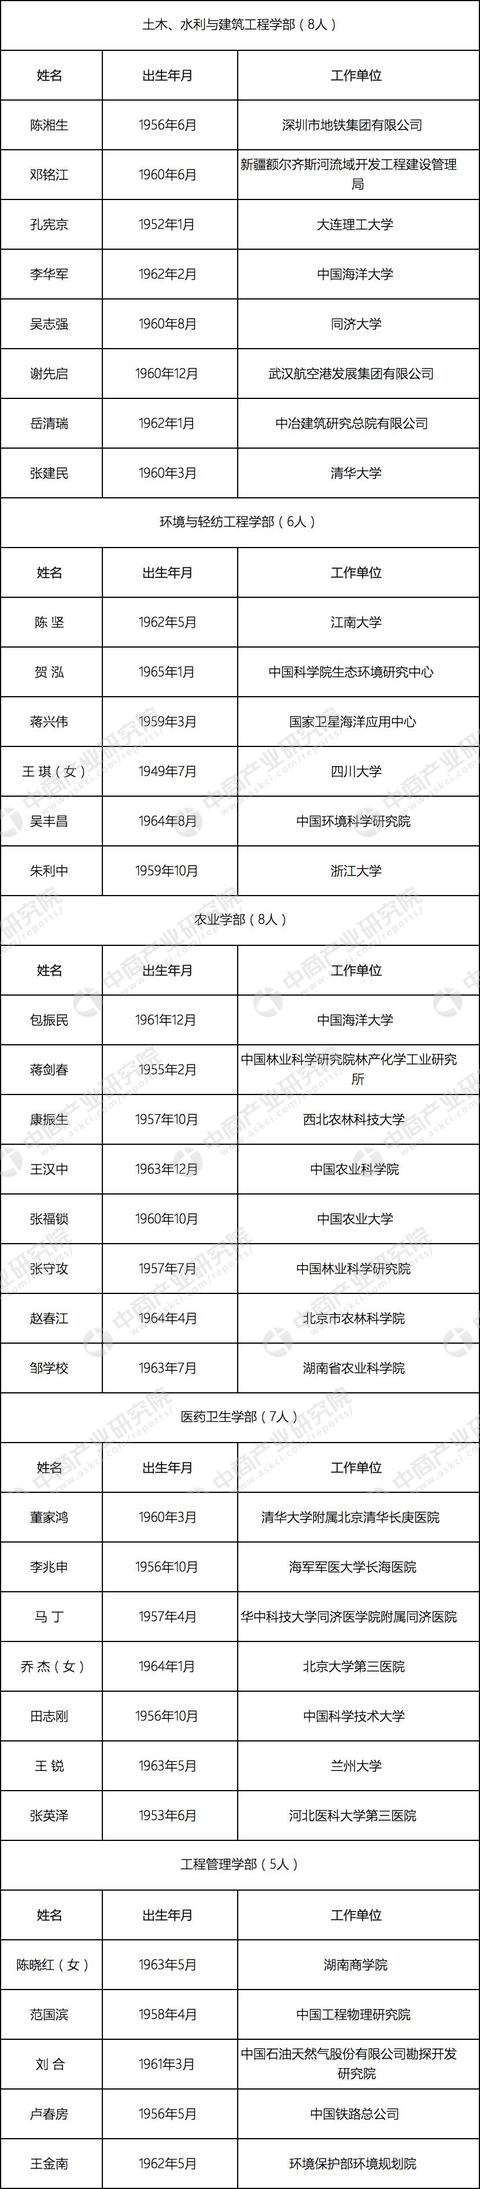 2017年中国高校新增工程院院士名单出炉，哈工大依然很强！